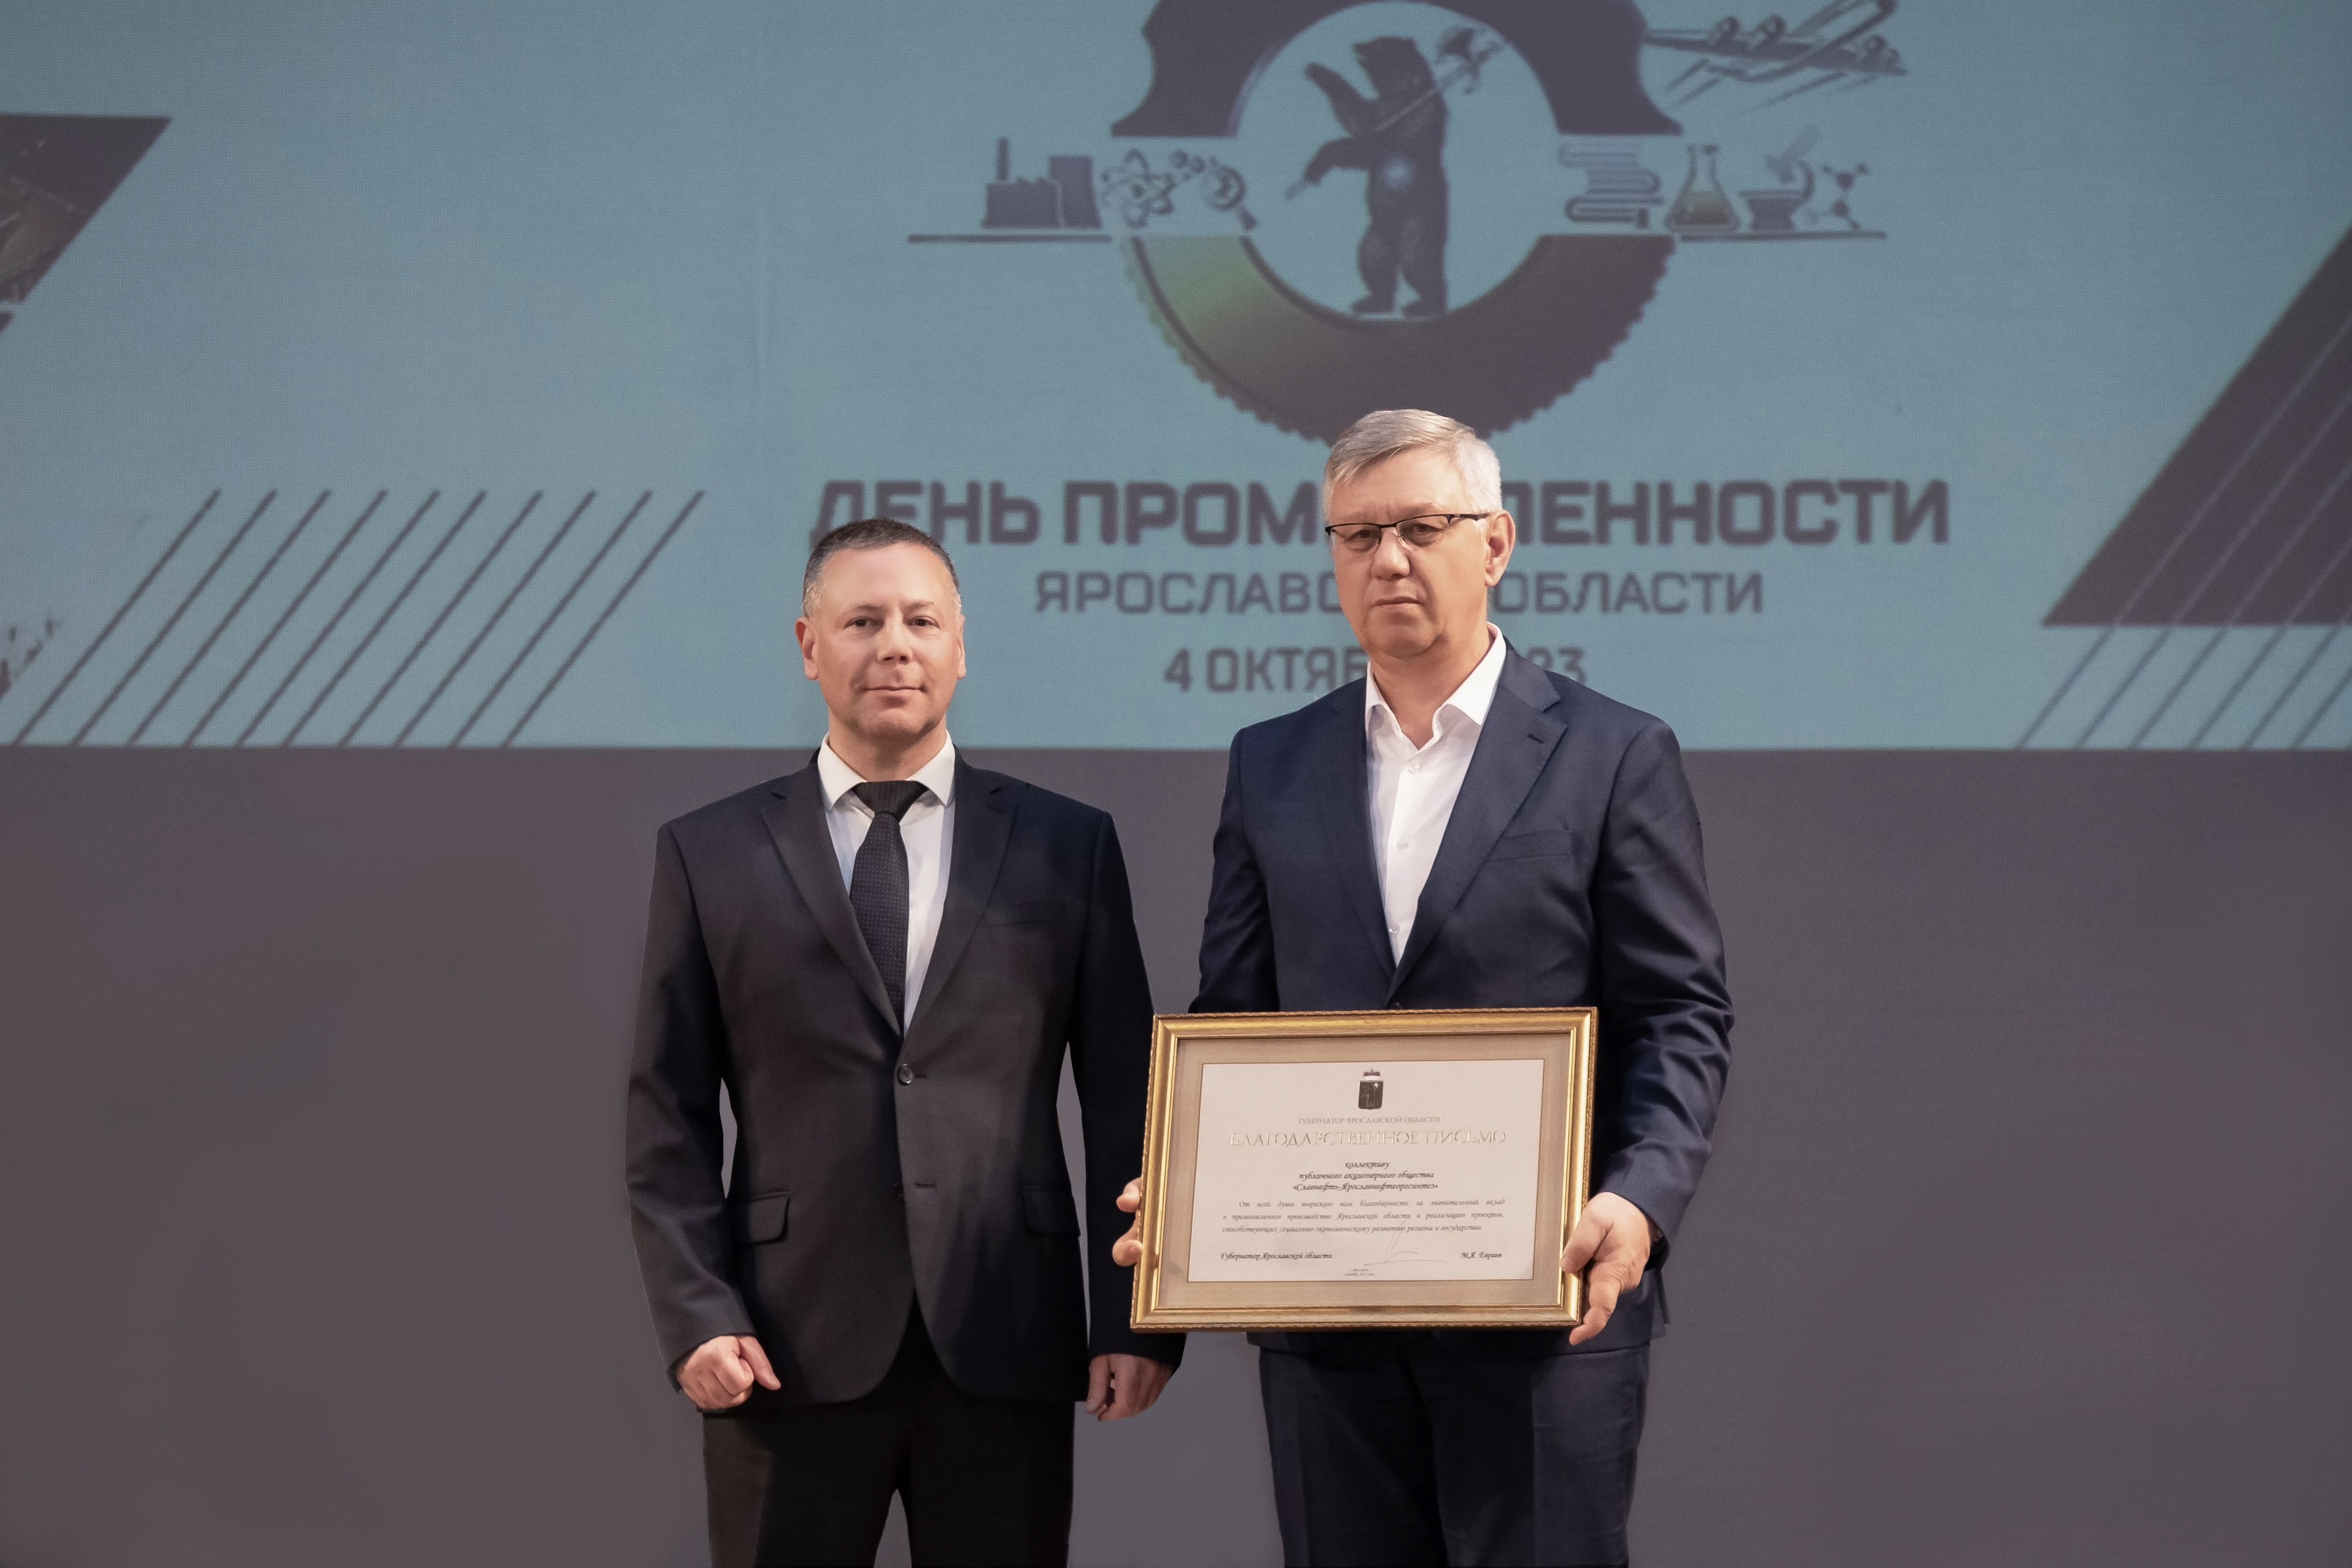 Достижения ЯНОСа были отмечены в преддверии Дня промышленности Ярославской области